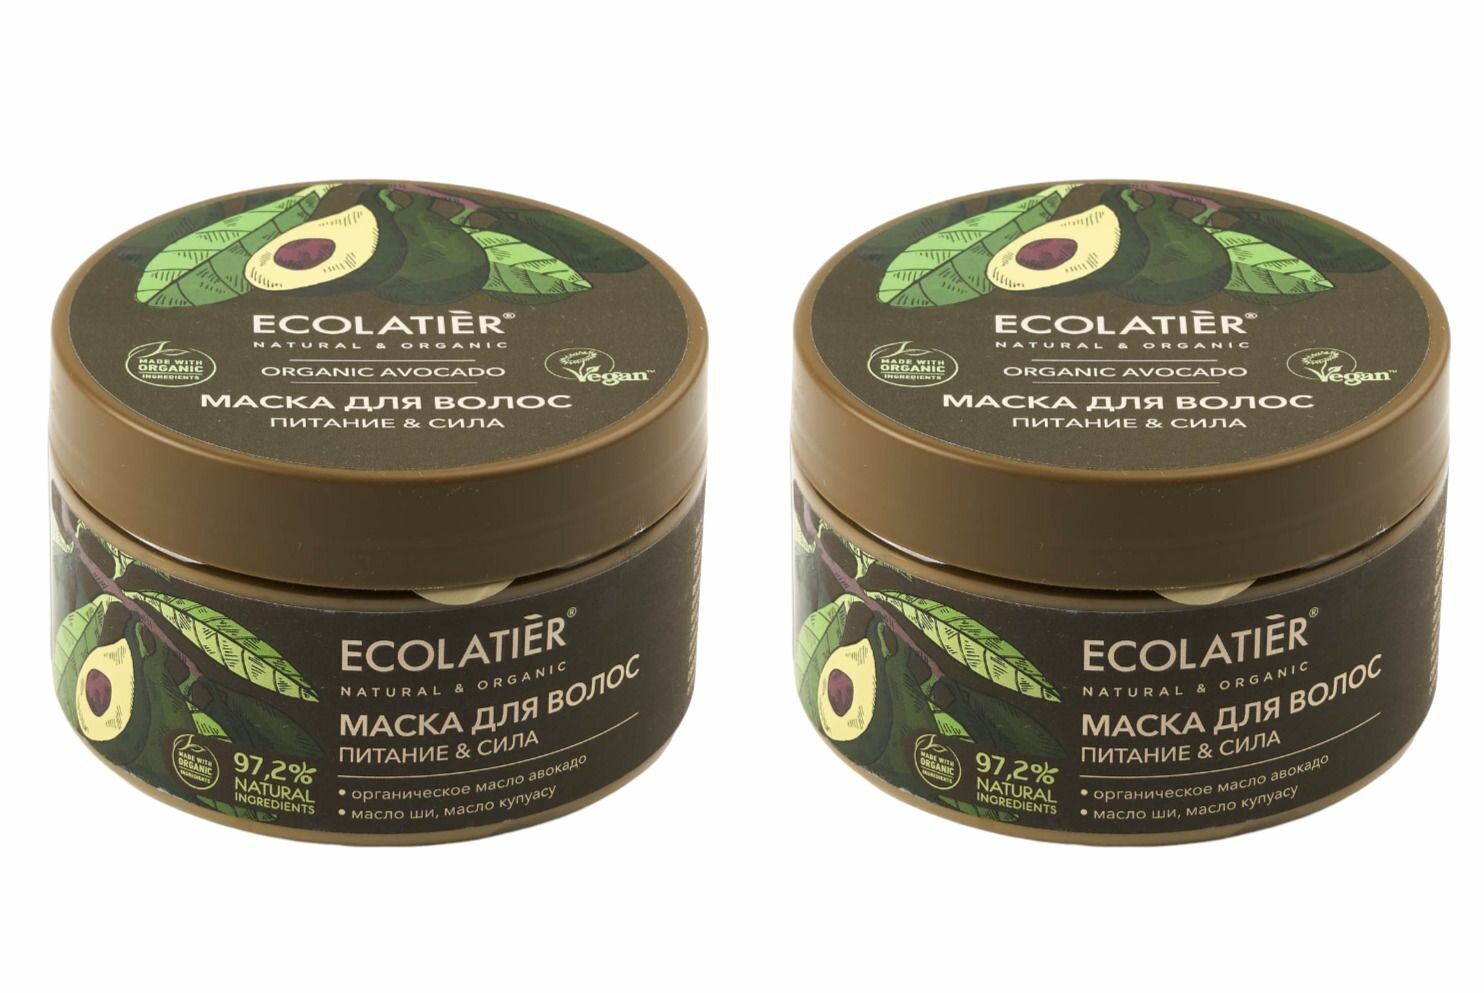 Ecolatier Маска для волос Питание & Сила, Organic Avocado, 250 мл, 2 шт